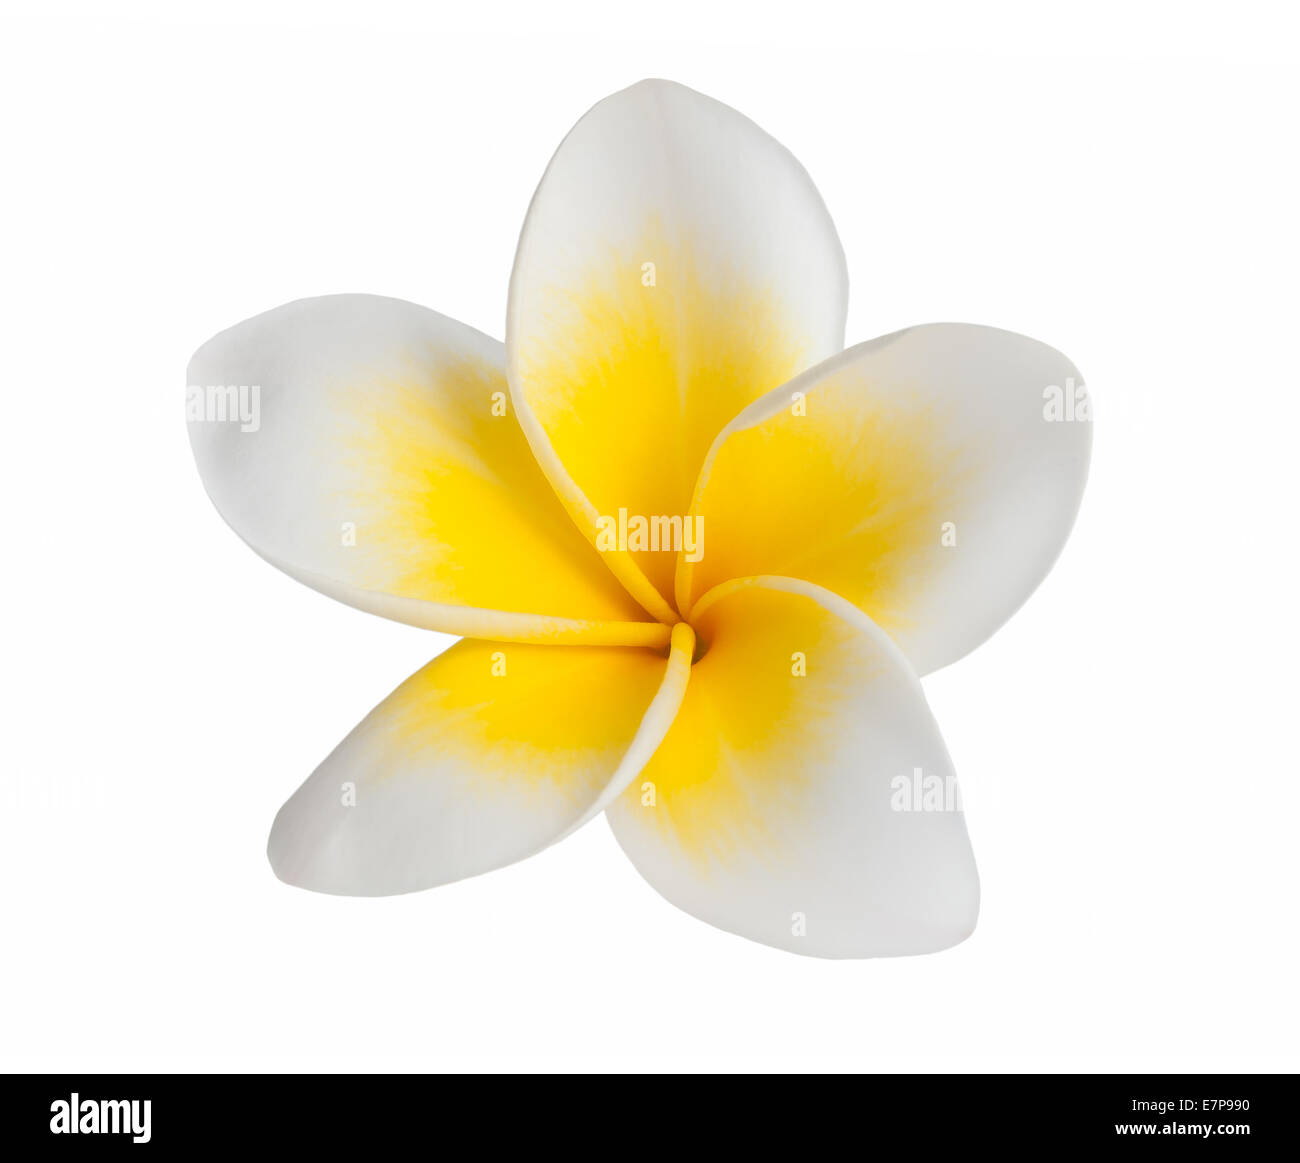 Frangipani flower  isolated on white background Stock Photo